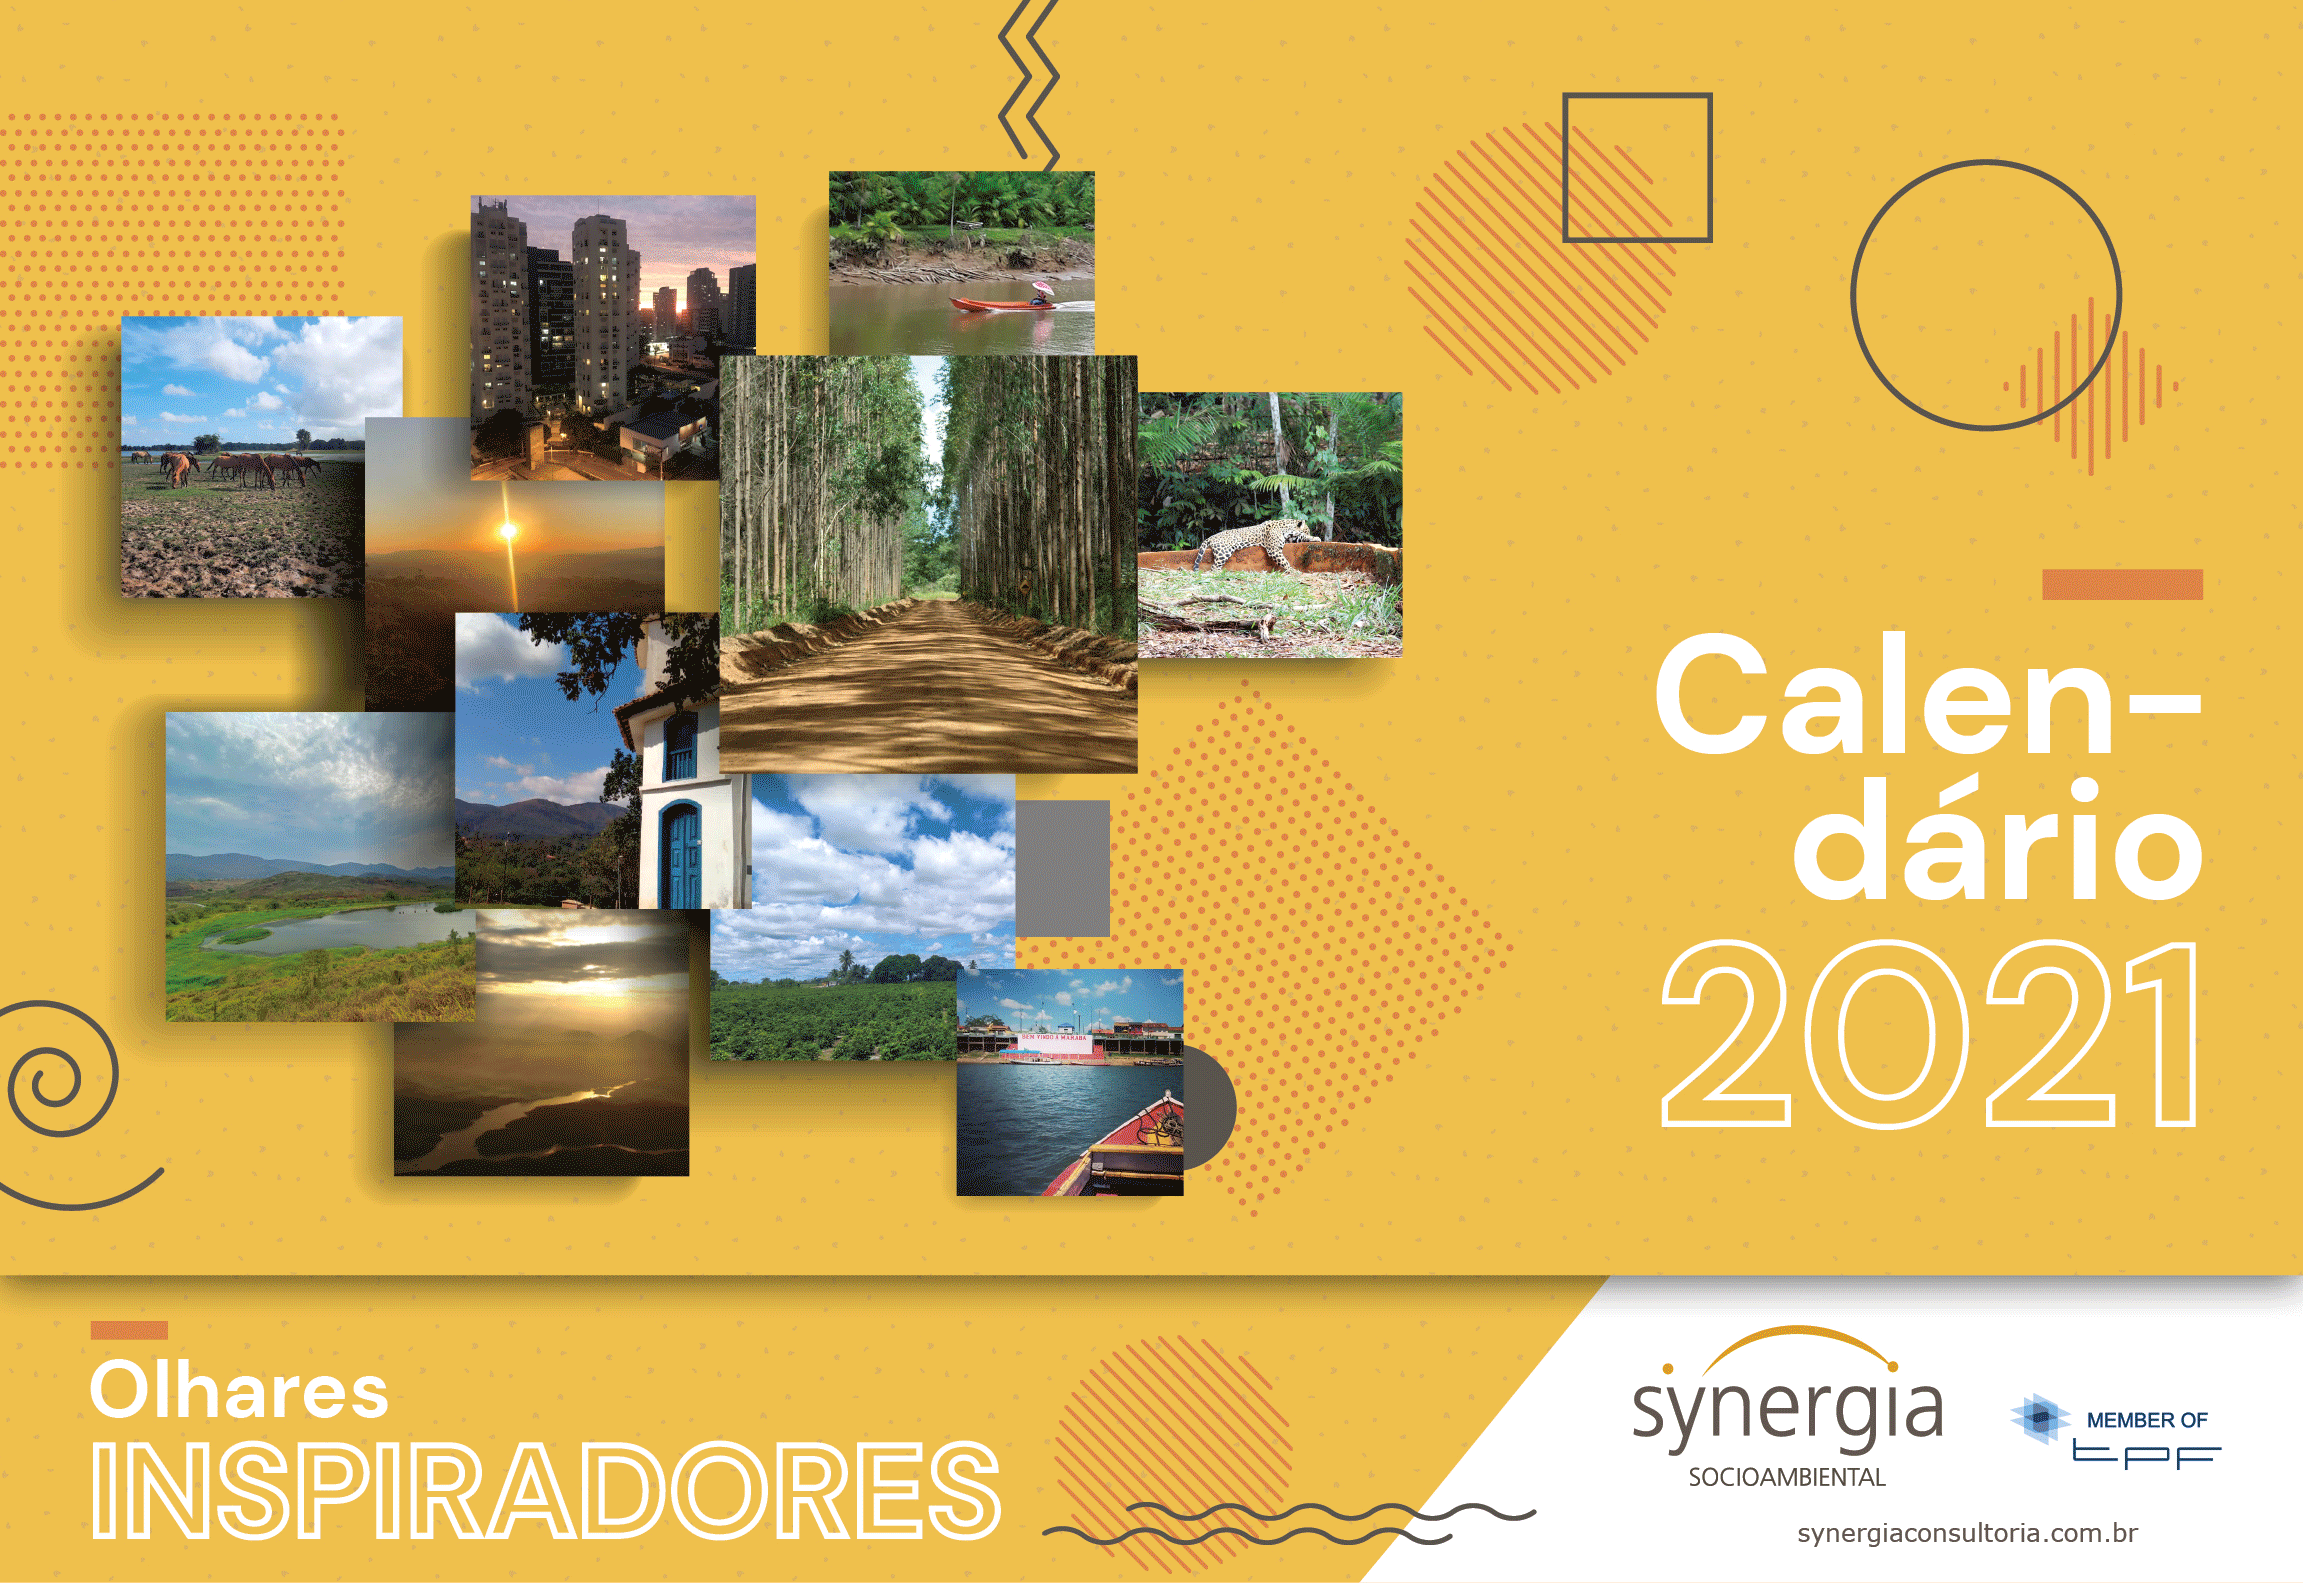 2021 Calendar: Inspiring glances